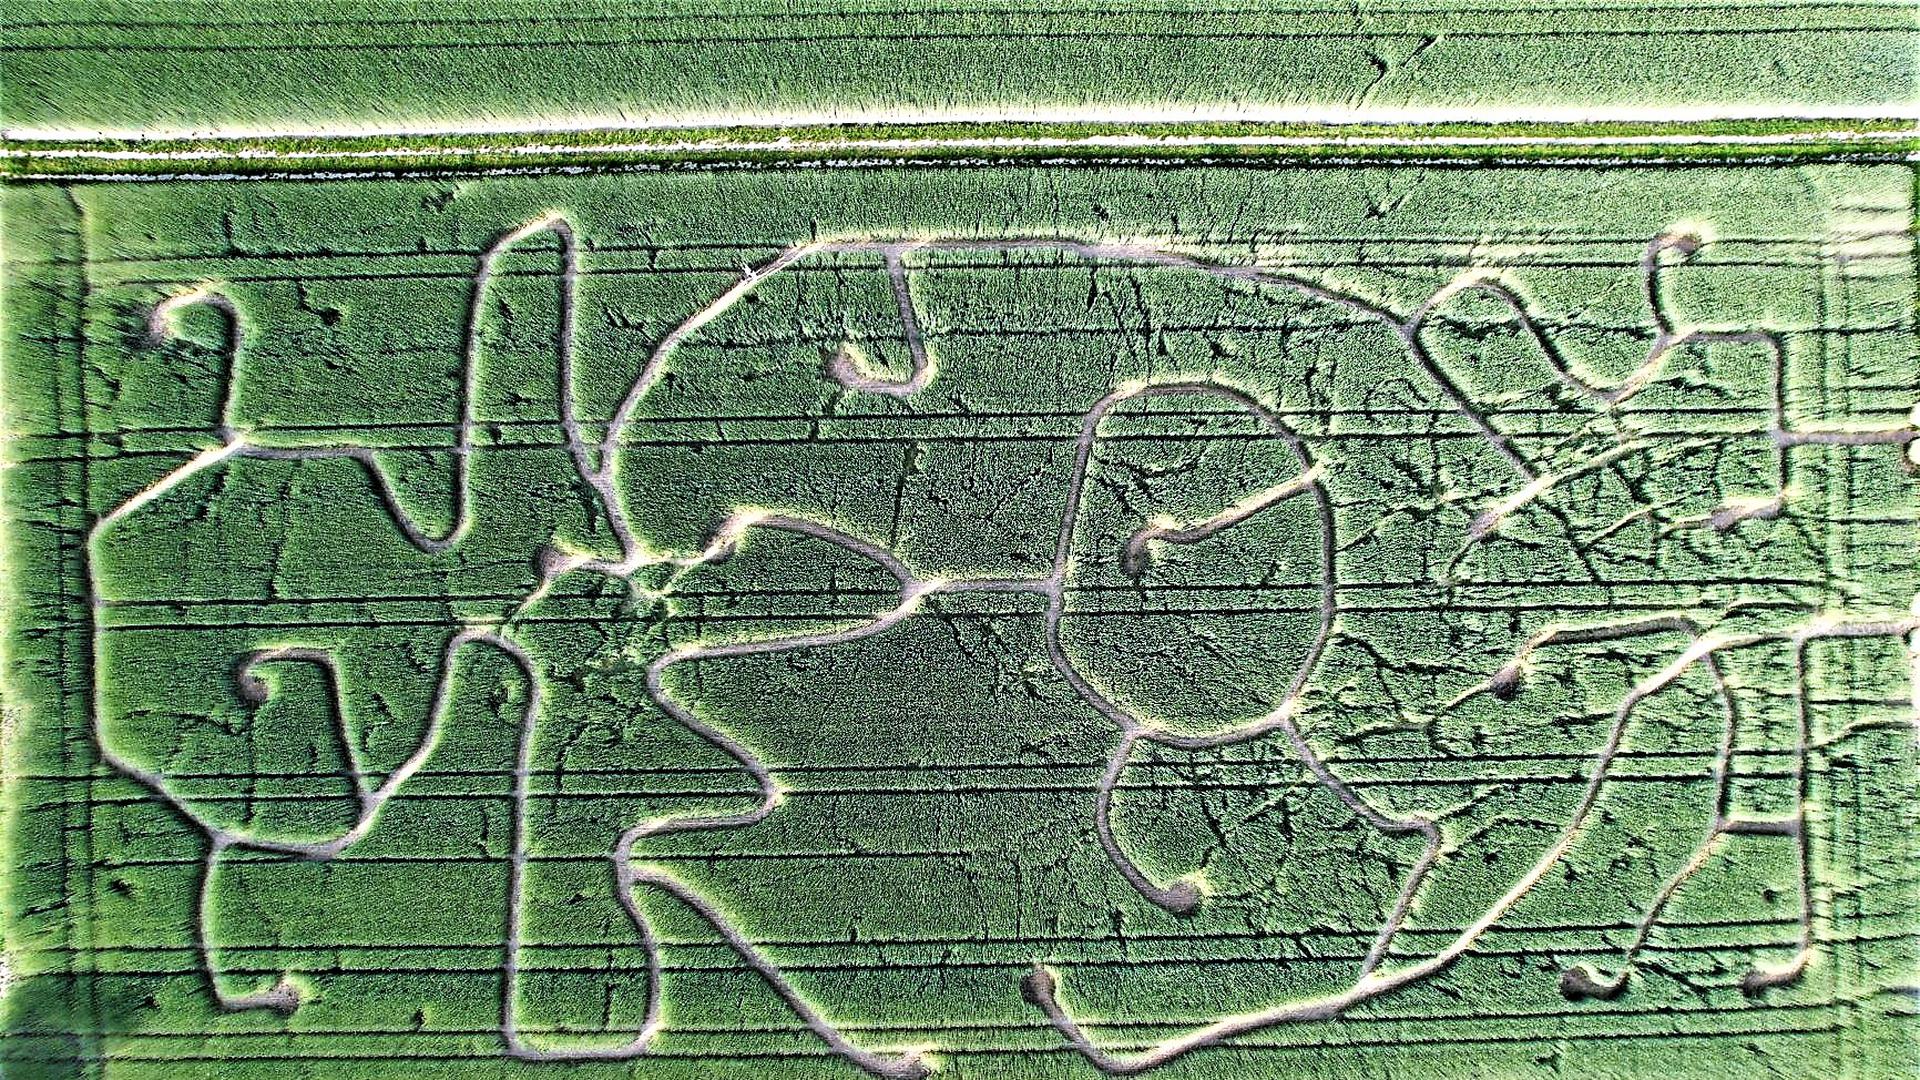 Ein Luftbild zeigt die Wege in einem Roggen-Labyrinth des Erdbeerlands Enderle in Durmersheim.